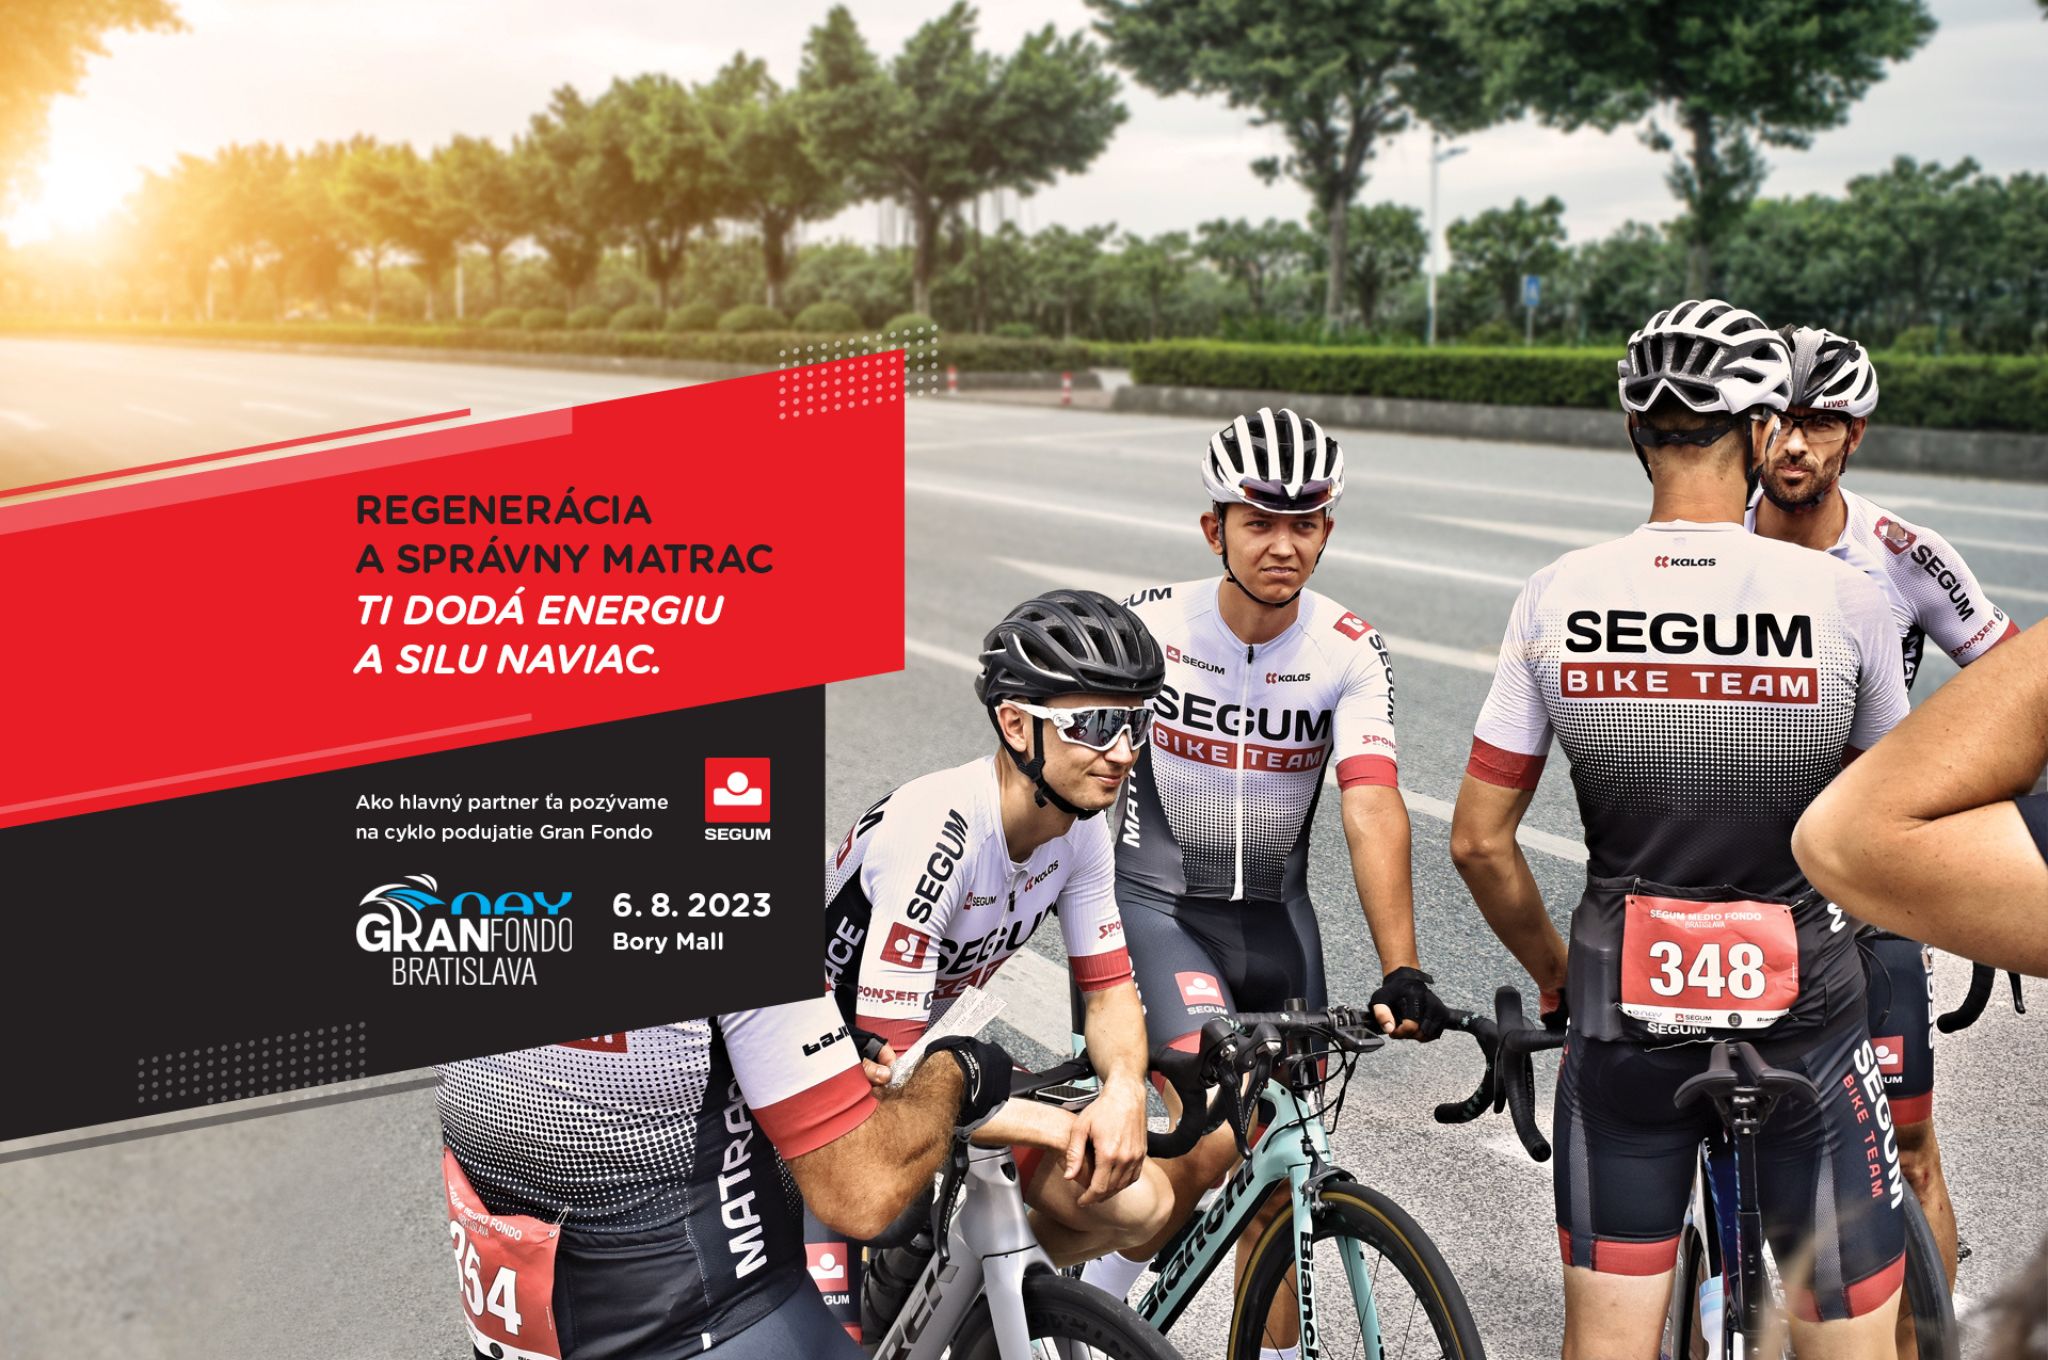 SEGUM opäť aj tento rok na 2. ročníku cyklopodujatia NAY Gran Fondo Bratislava 2023